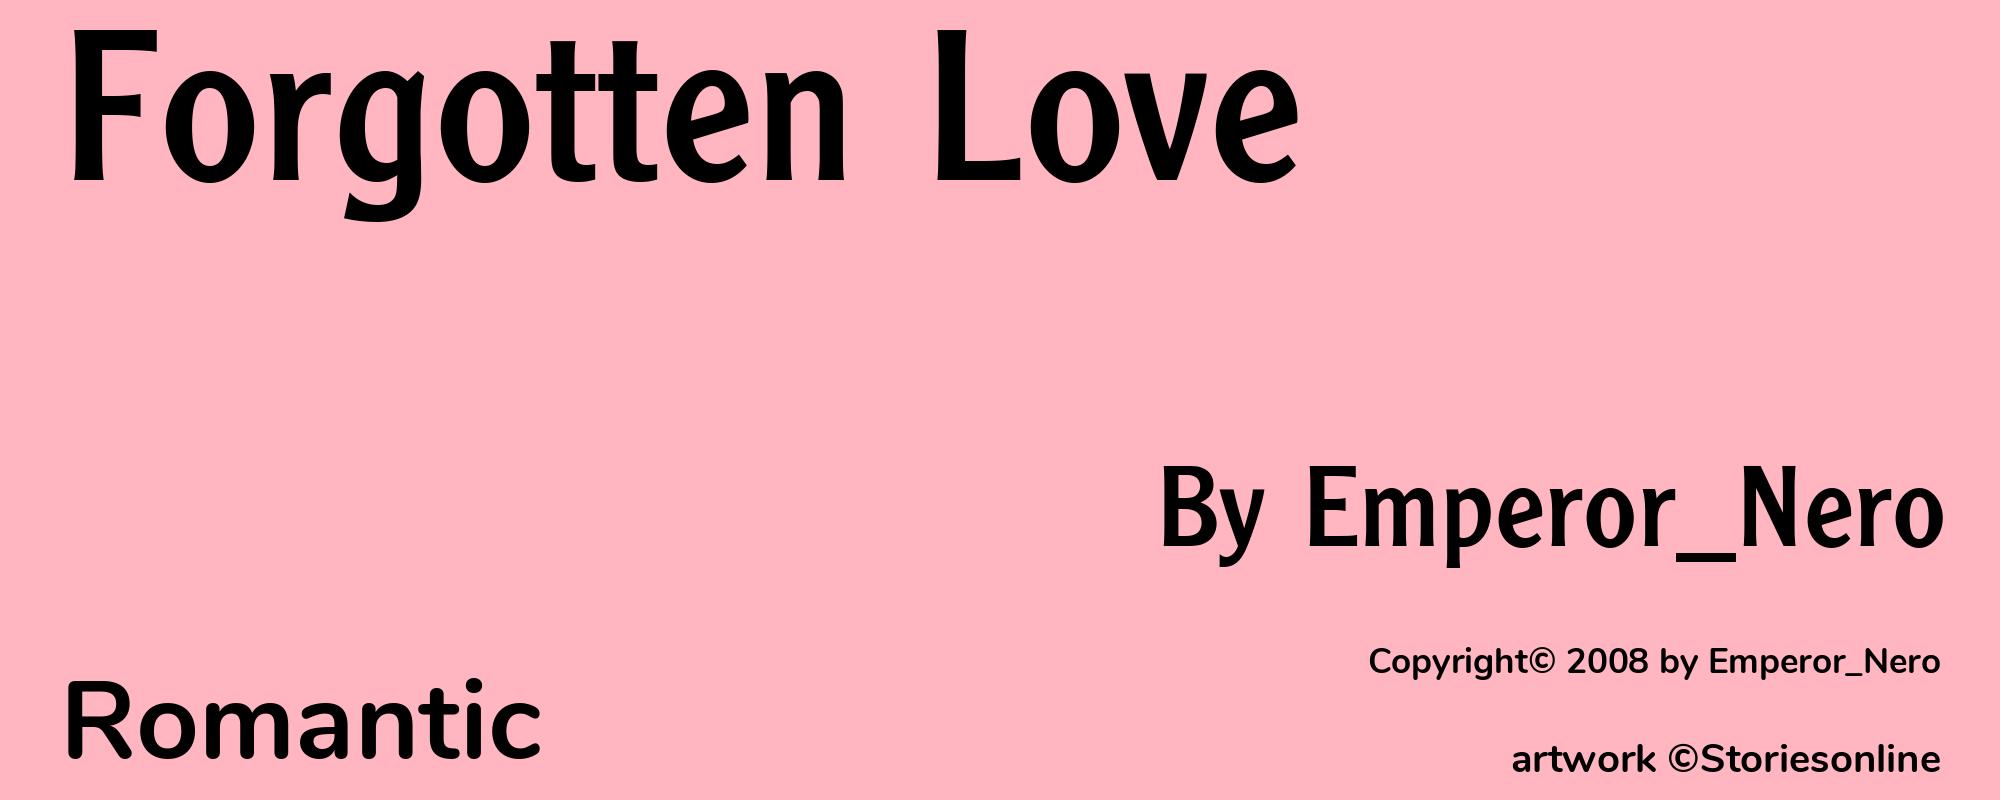 Forgotten Love - Cover